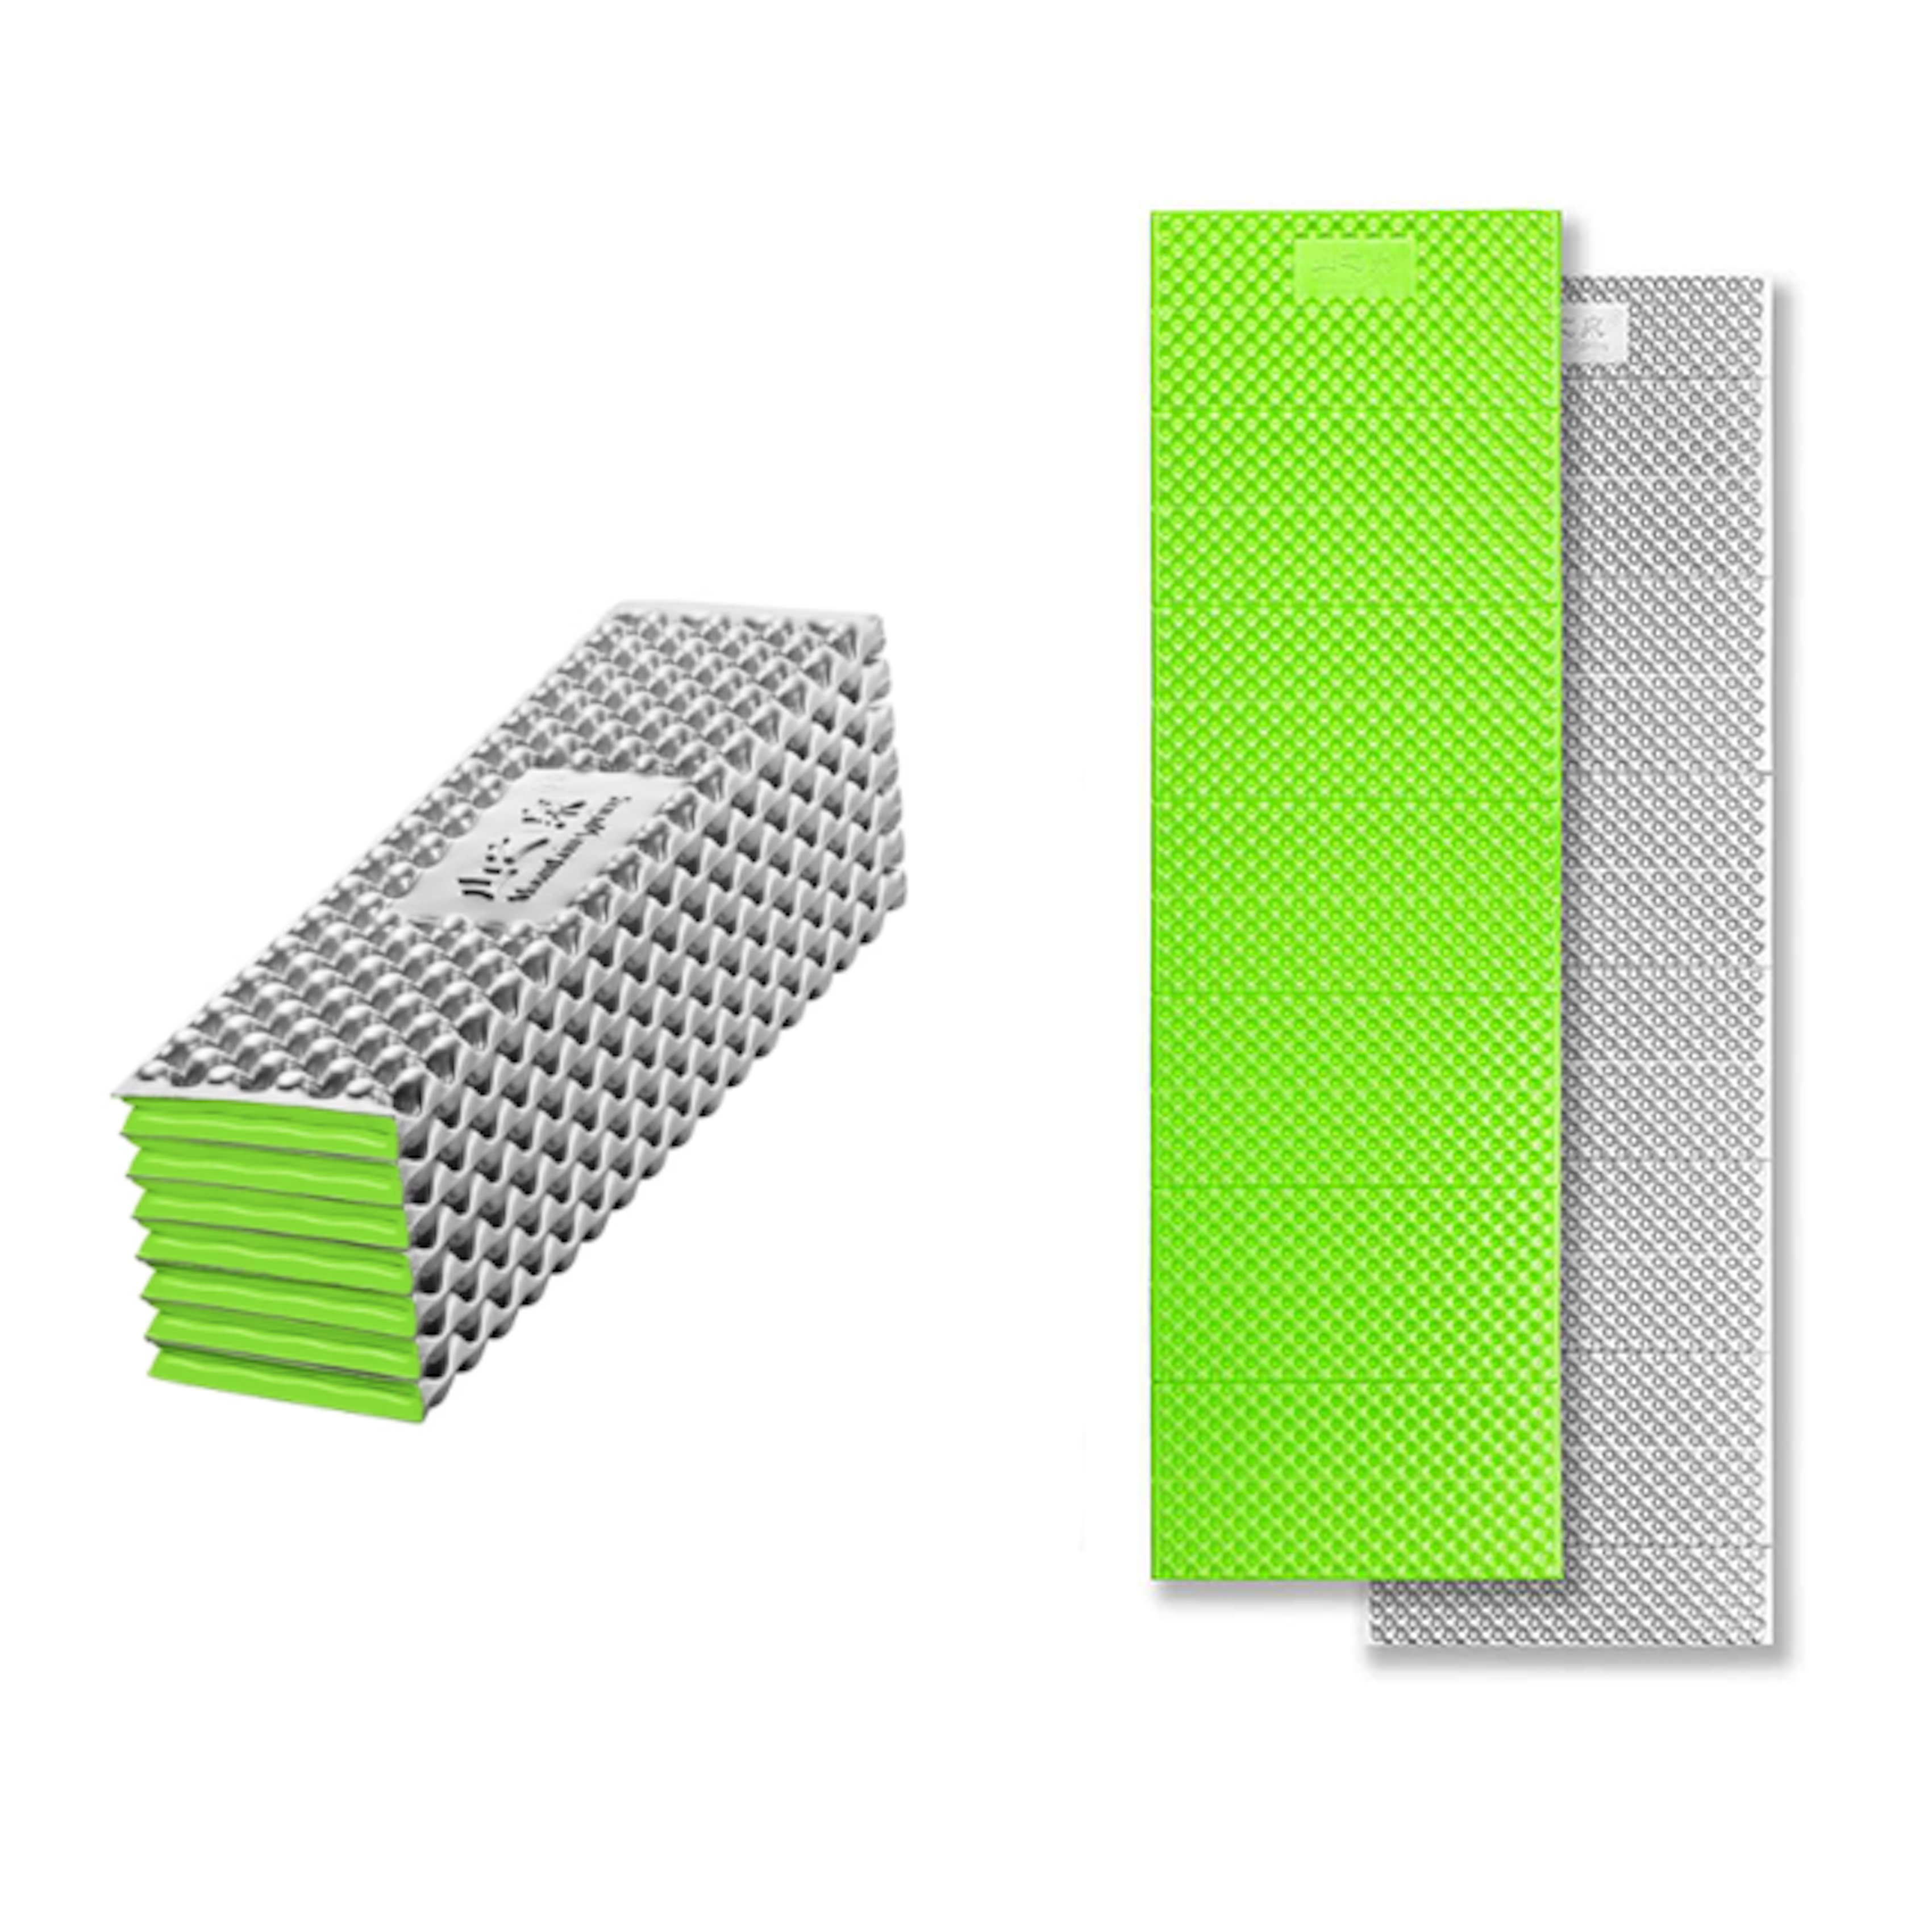 Classic Folding Aluminum Closed Cell Foam Sleeping Pad| R1.8